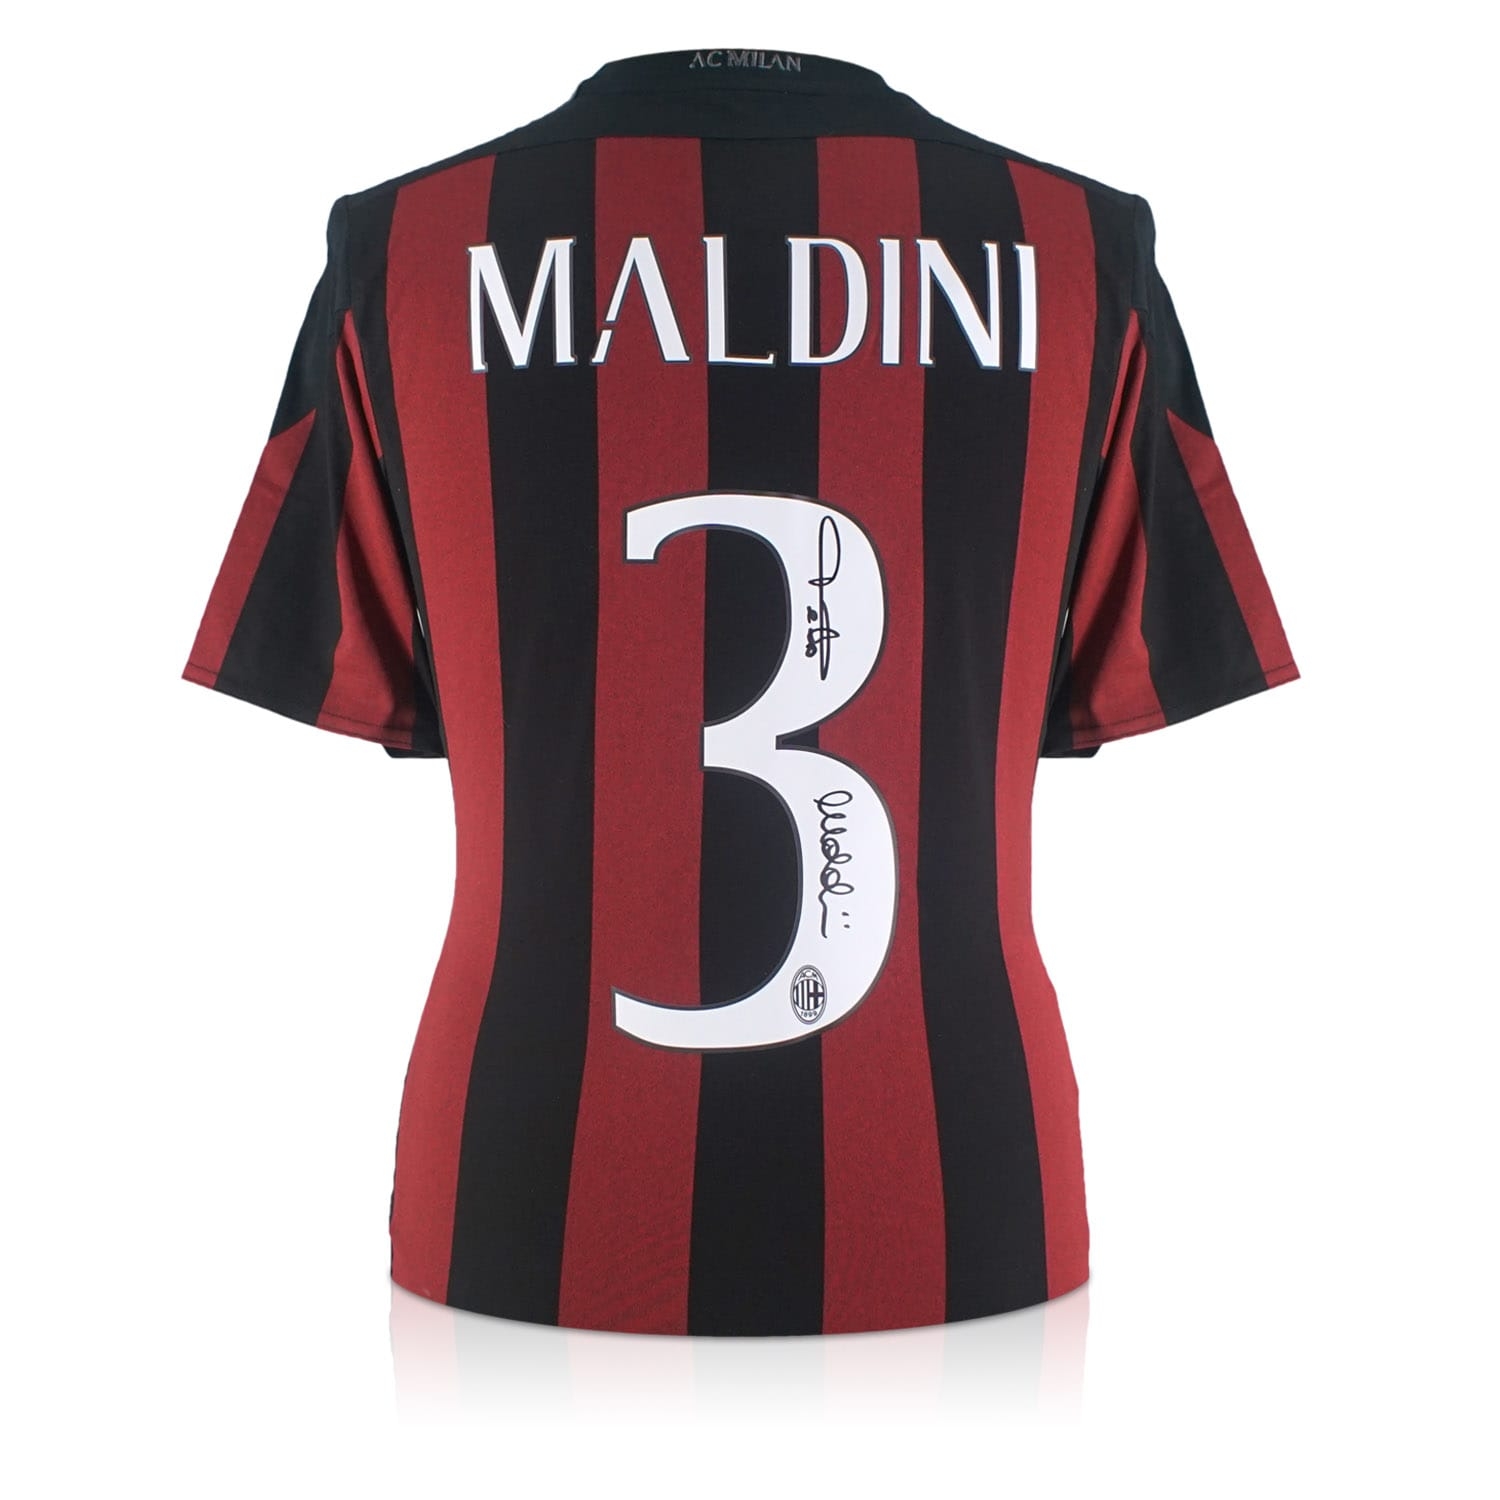 Paolo Maldini Signed AC Milan Football 